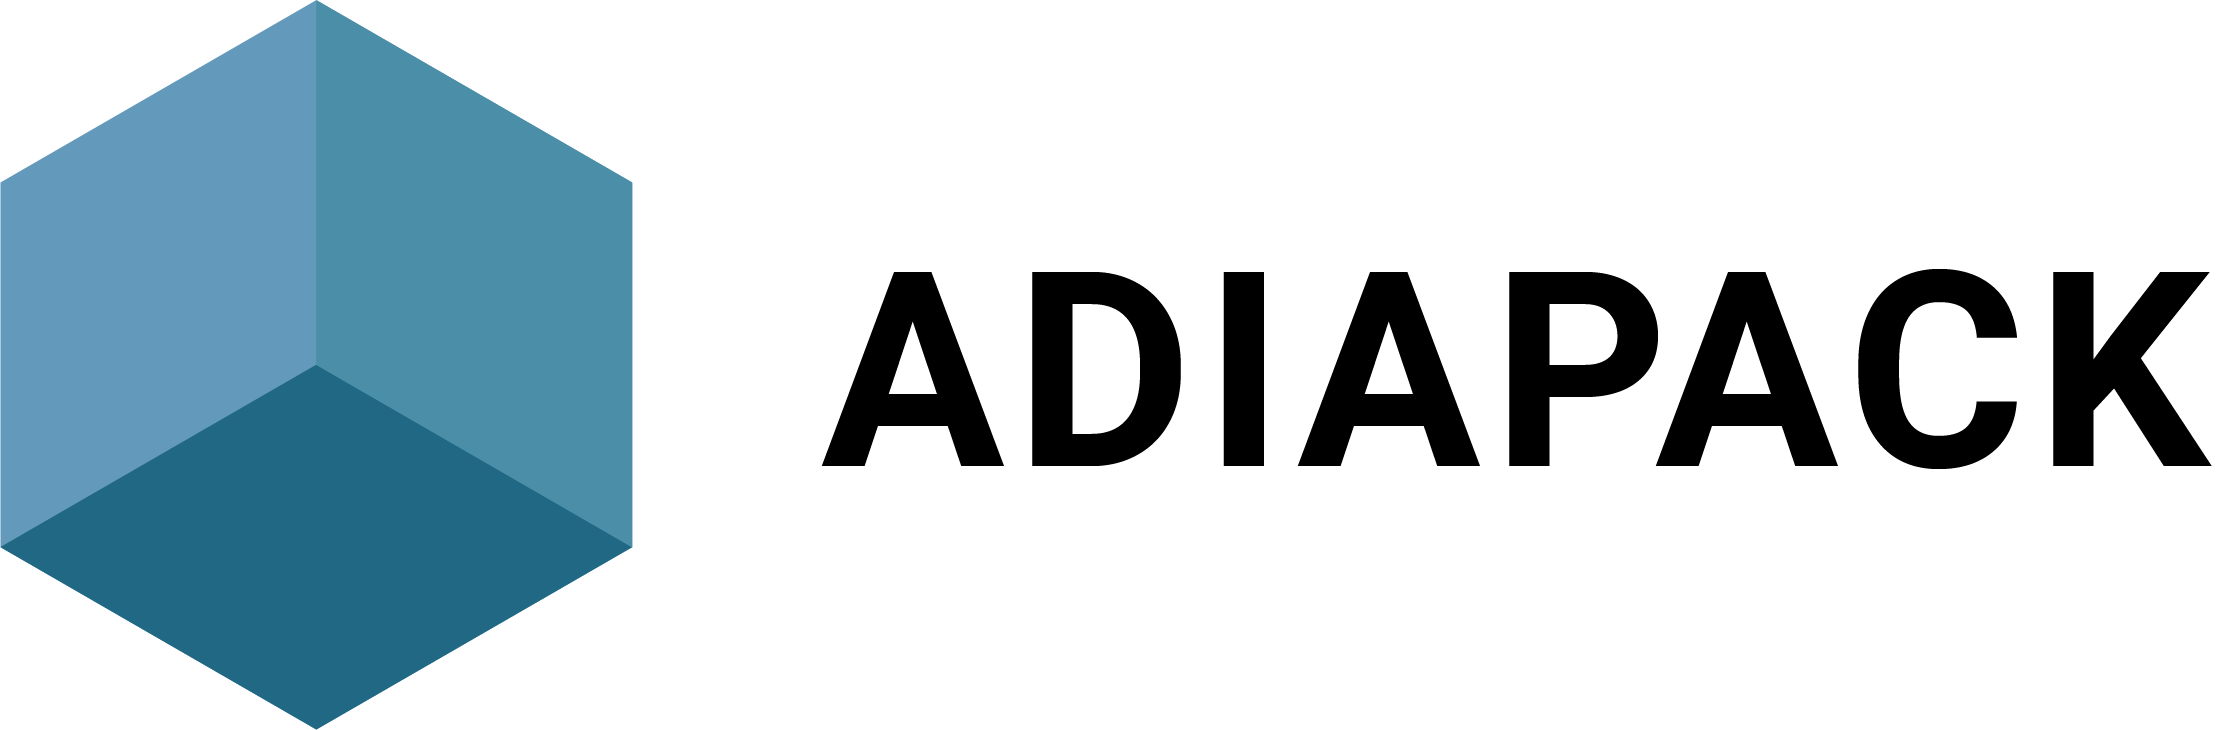 adiapack logo